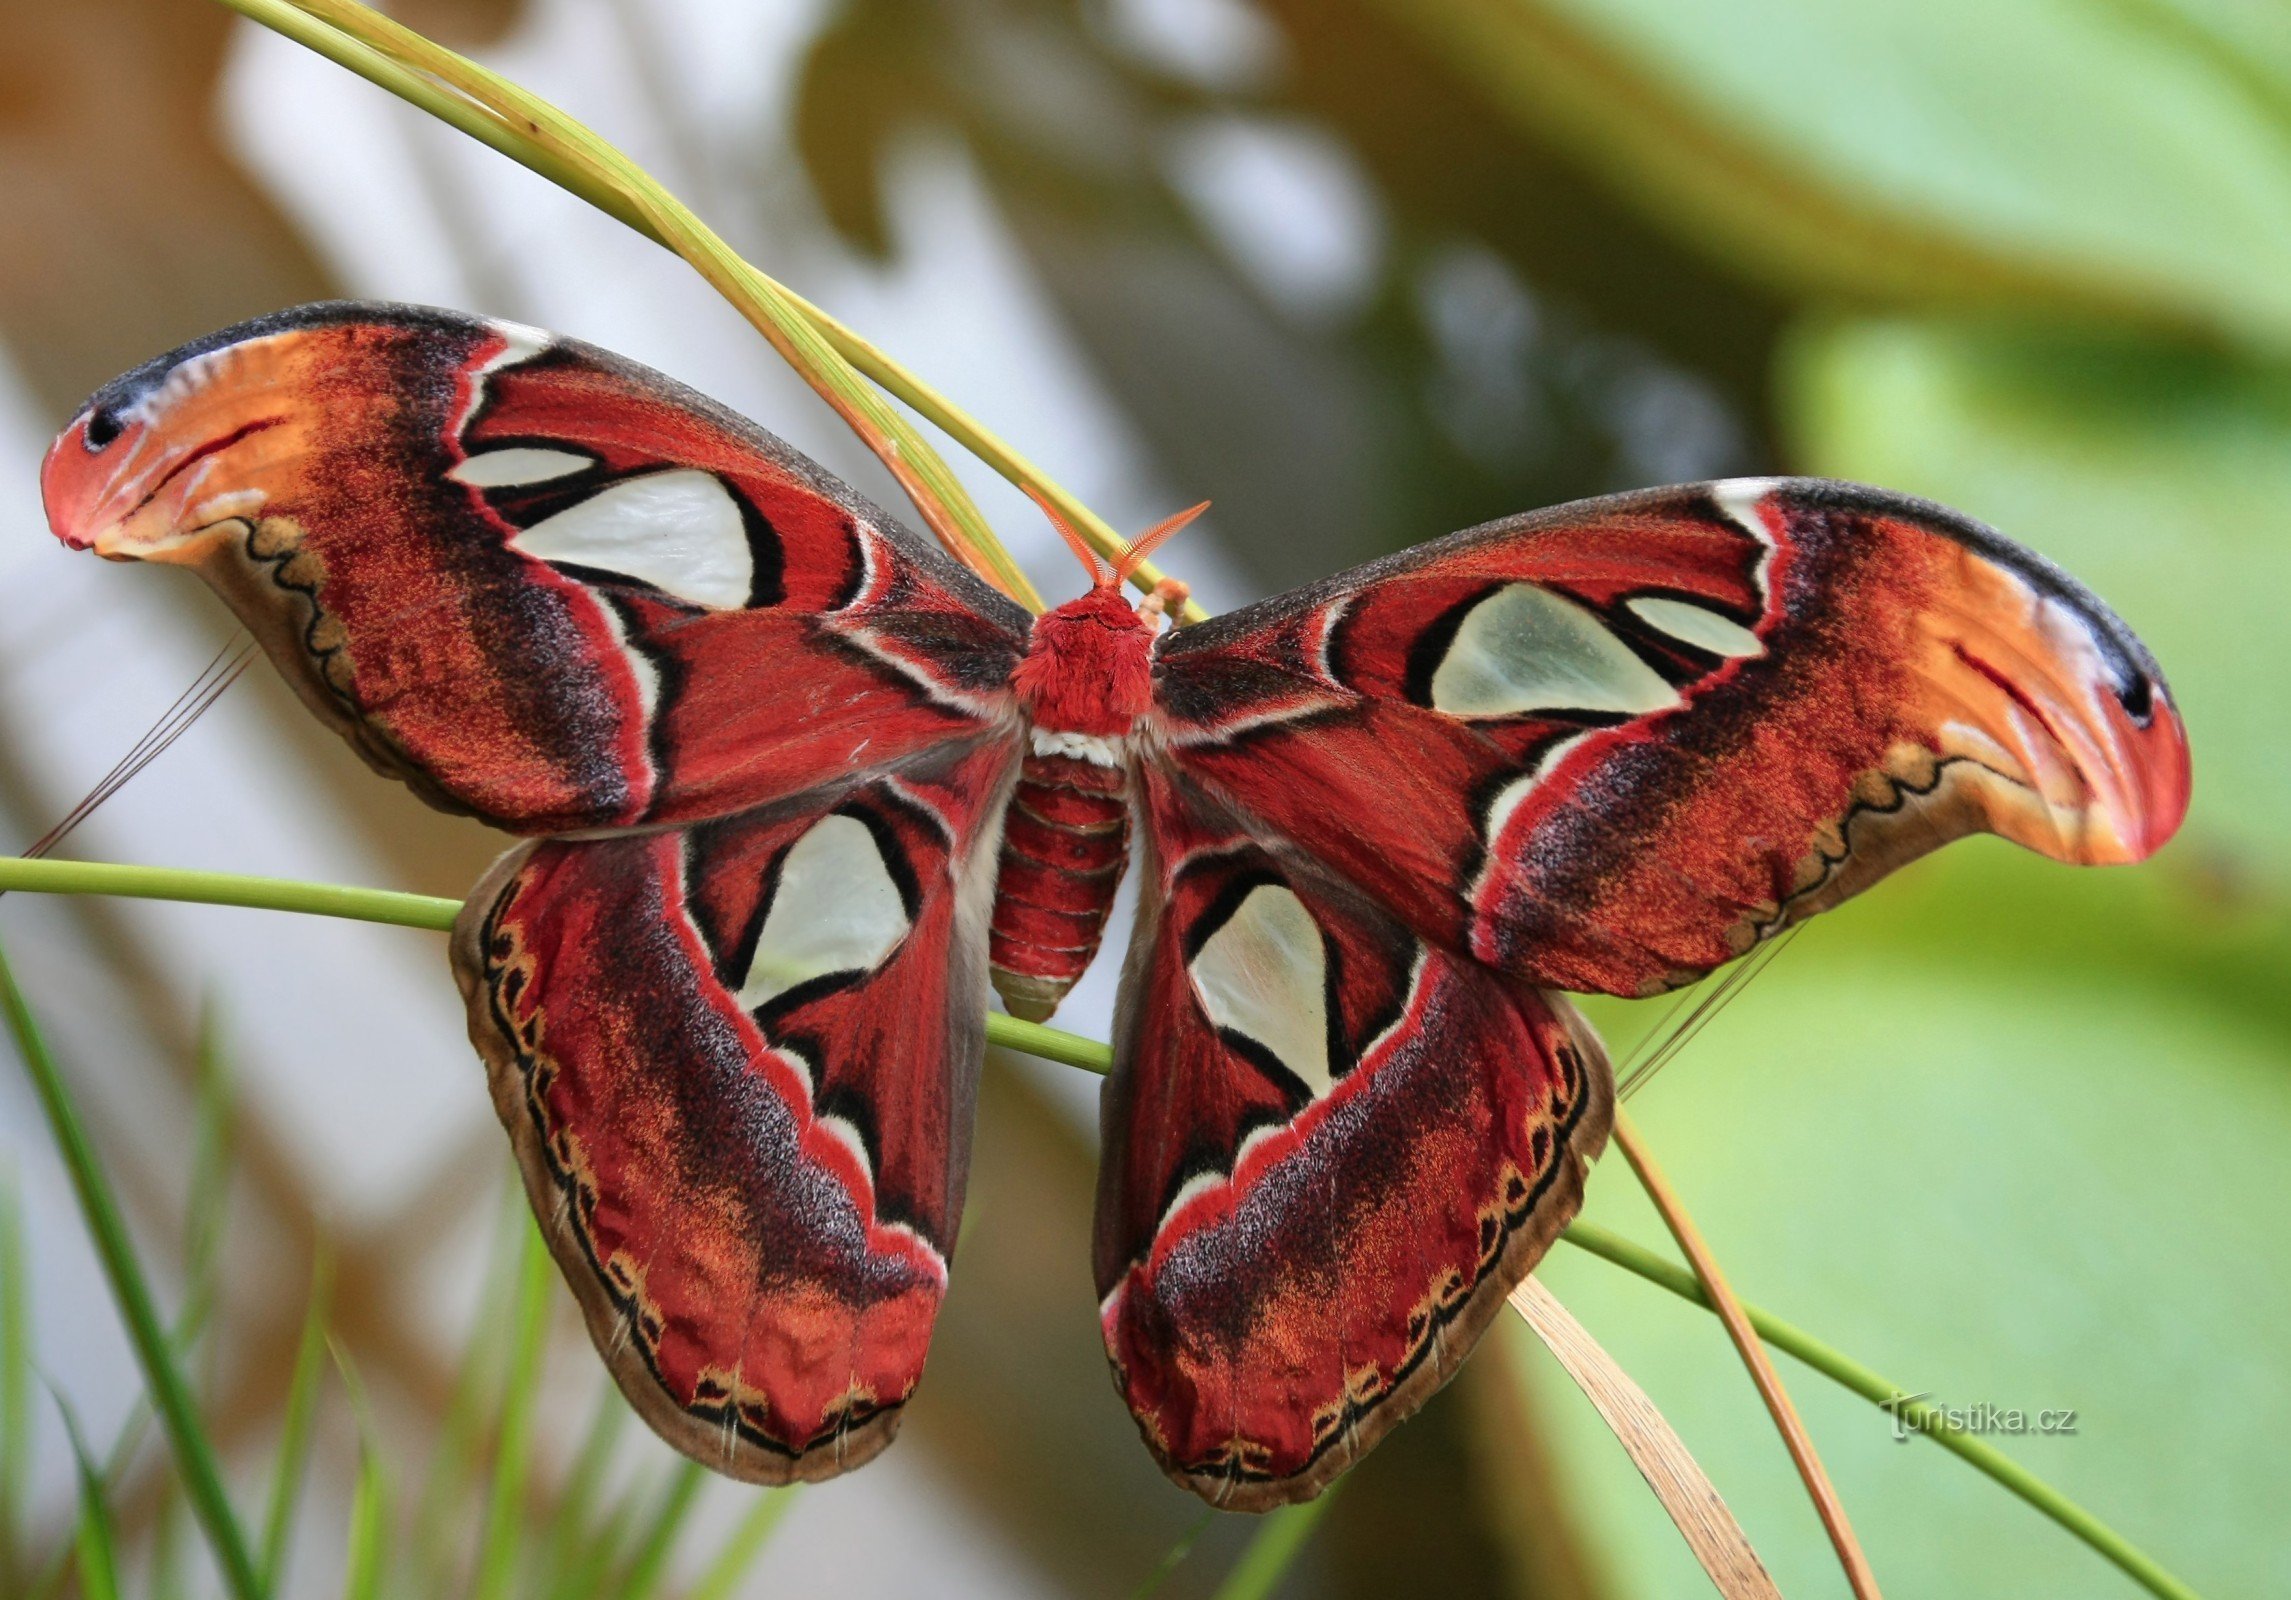 Vườn bách thảo Brno - Attacus atlas - loài bướm lớn nhất thế giới 12.9.2014